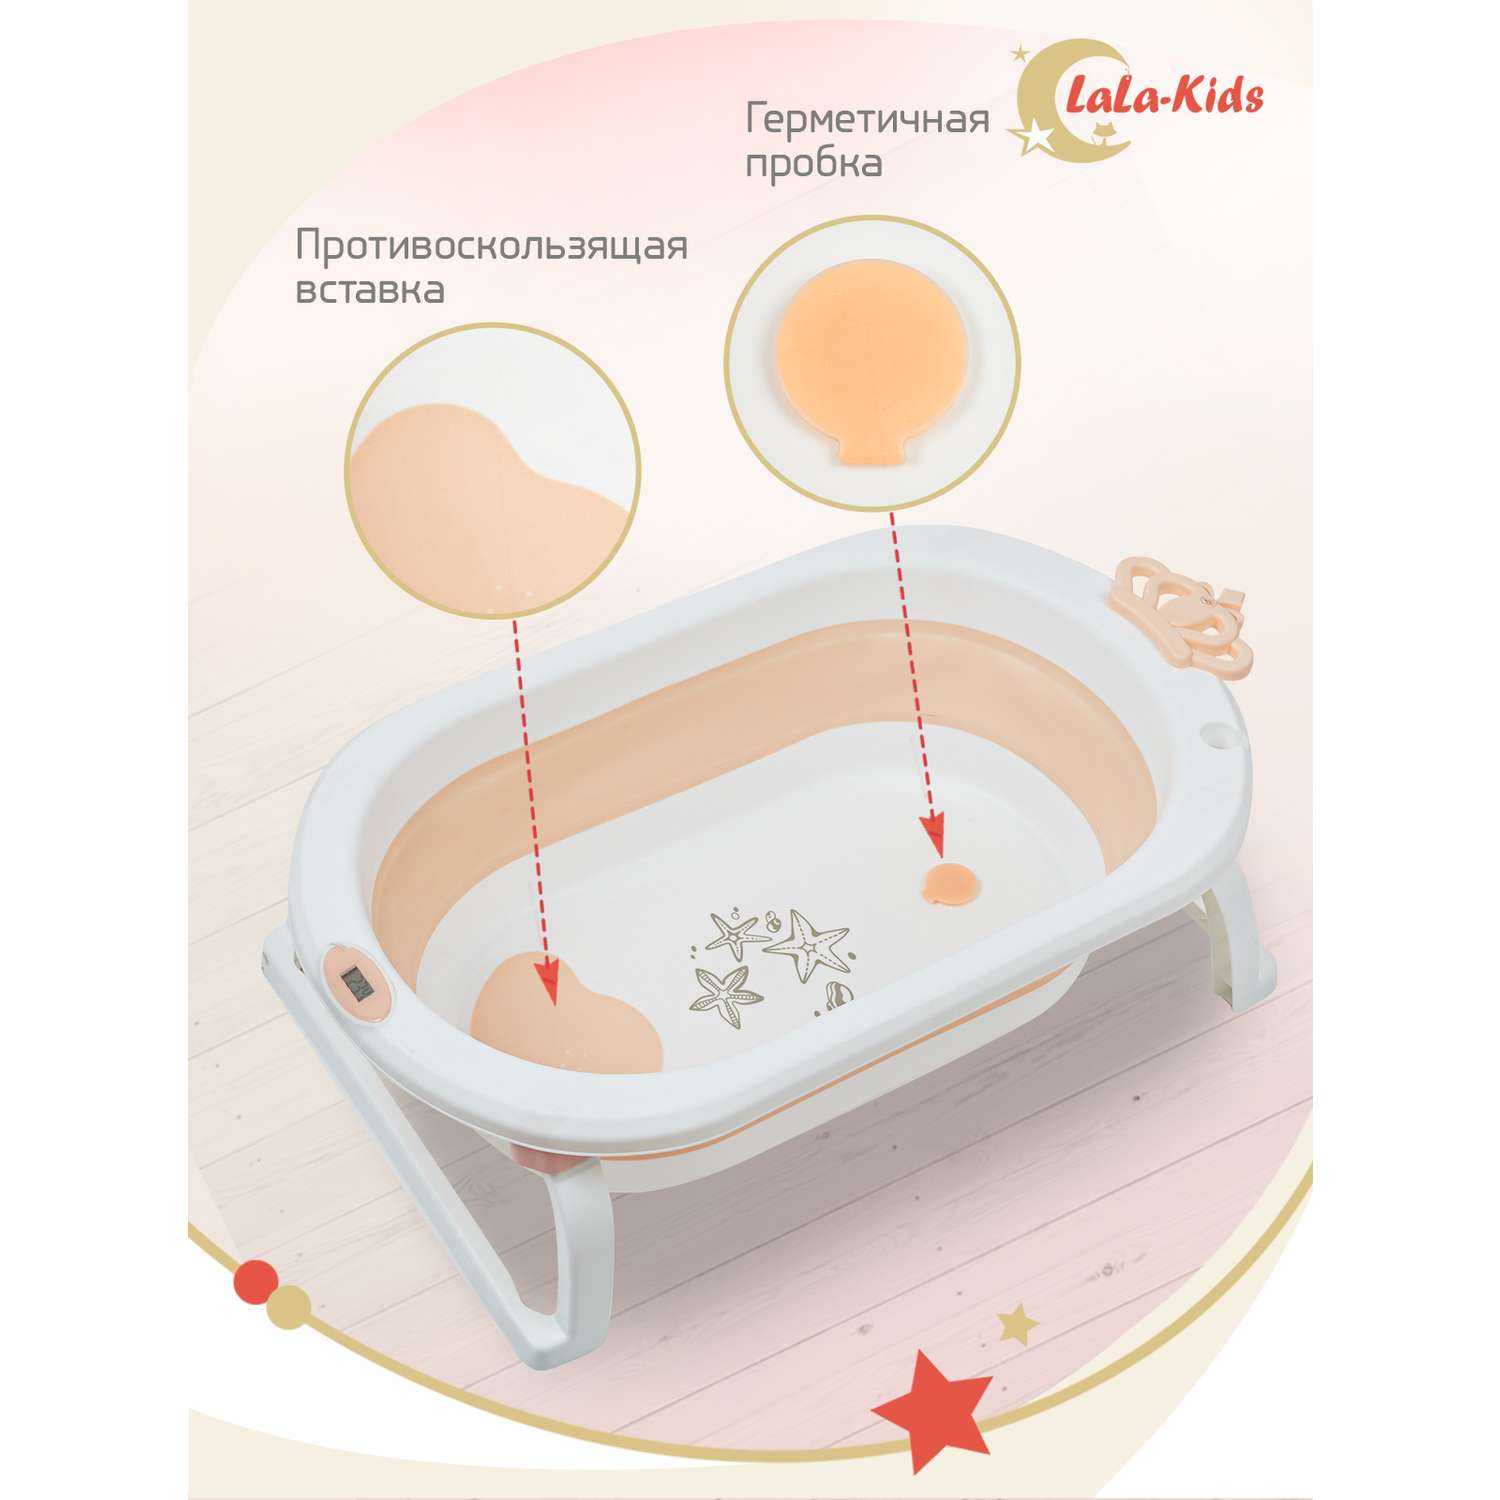 Детская ванночка с термометром LaLa-Kids складная для купания новорожденных с термометром и матрасиком в комплекте - фото 5